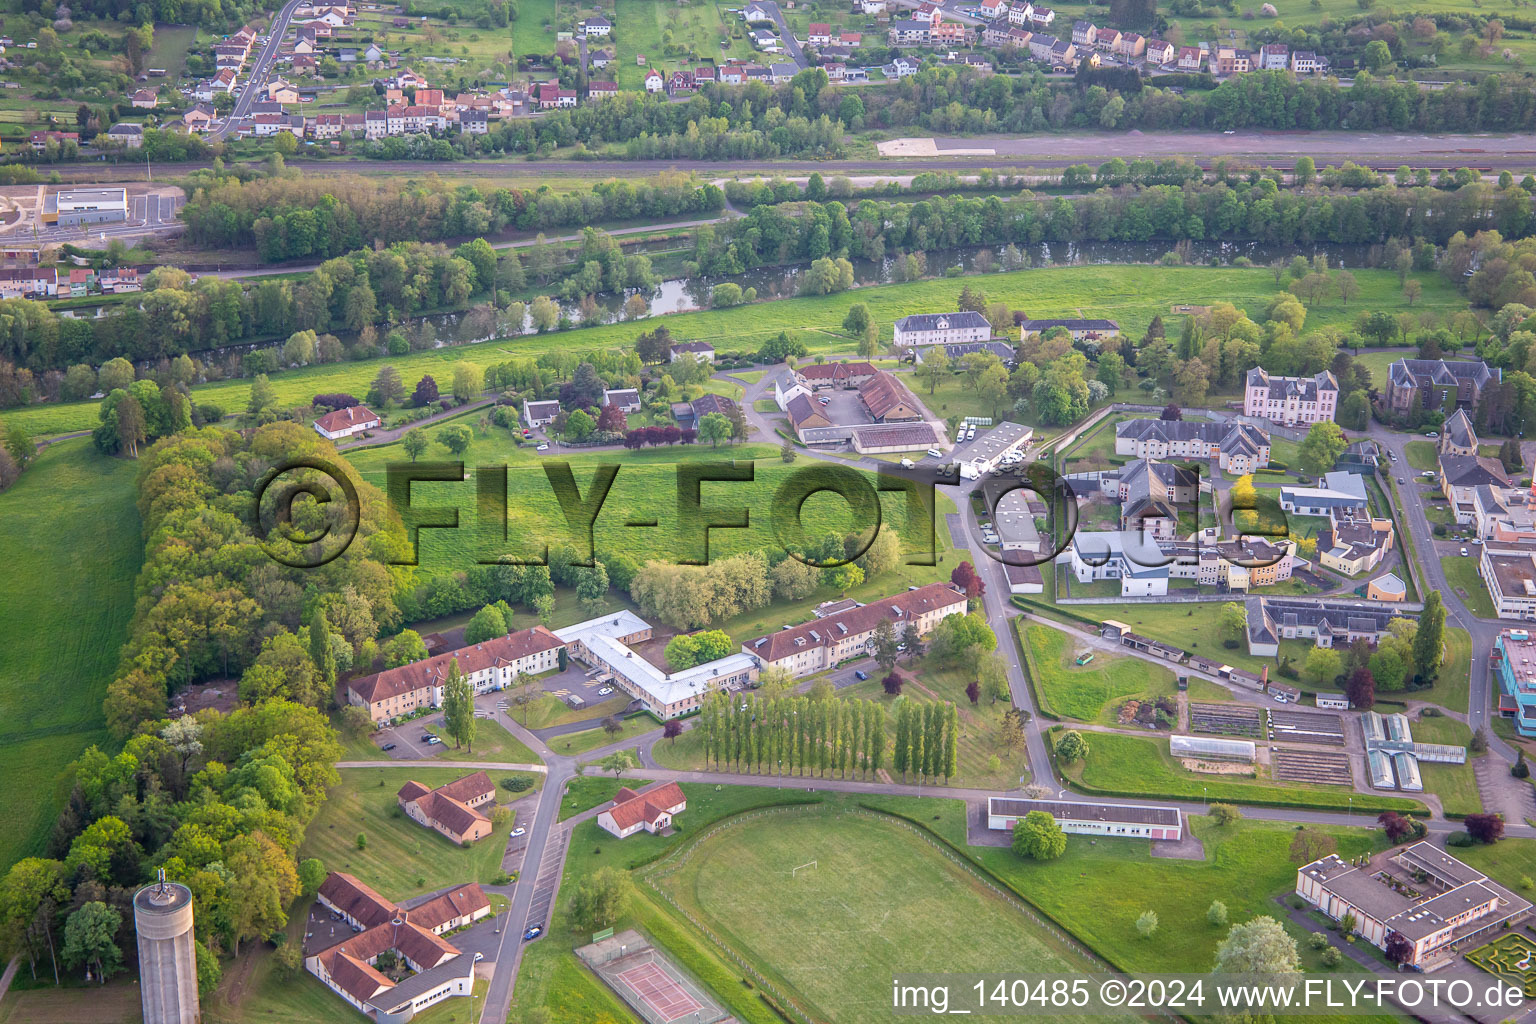 Photographie aérienne de Ctre Hospitalier Spécialisé à le quartier Blauberg in Saargemünd dans le département Moselle, France